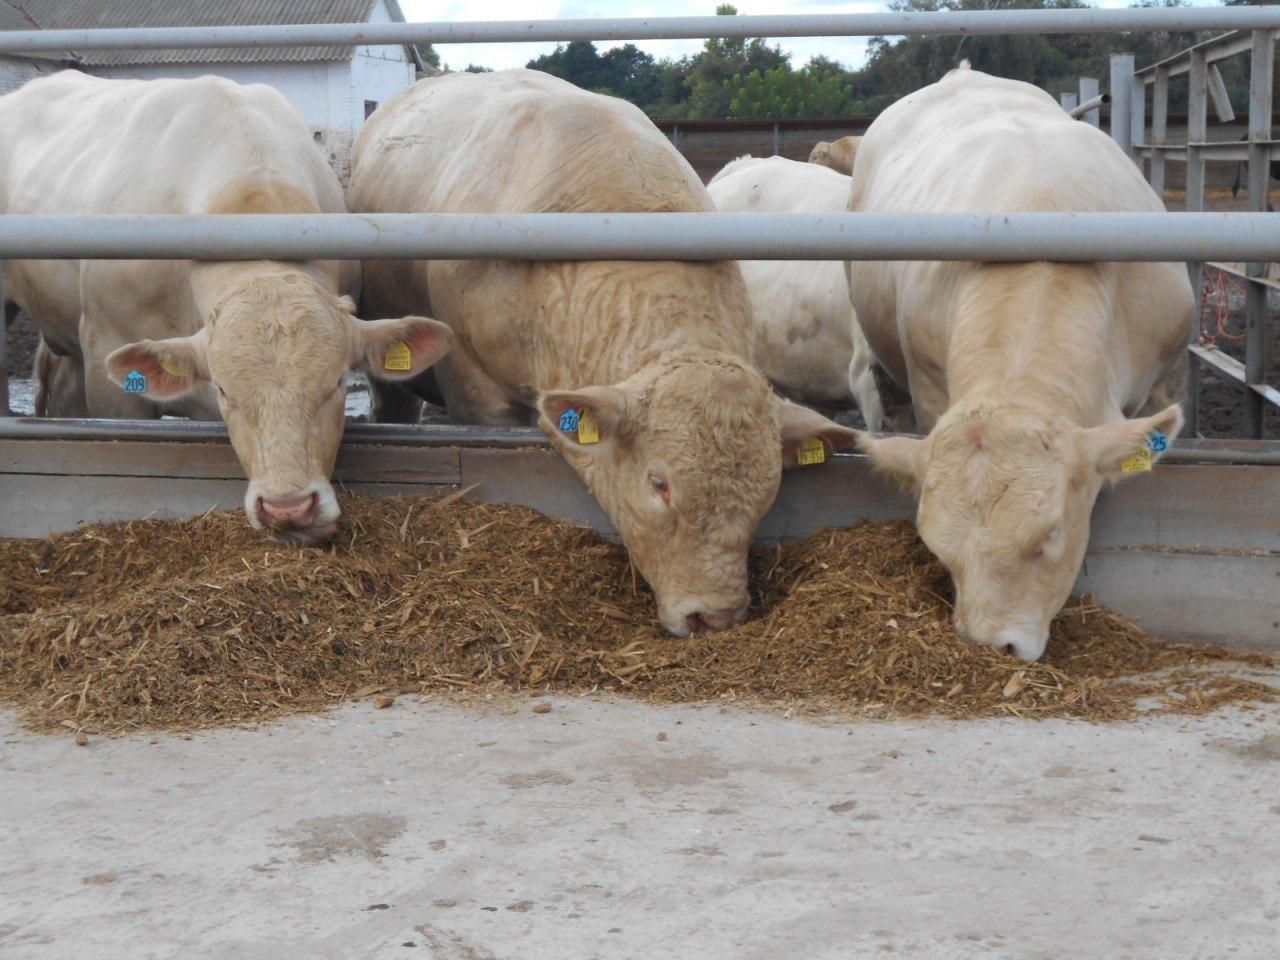 "Укрлендфармінг" Бахматюка: антибіотики в тваринництві повинні жорстко контролюватися державою